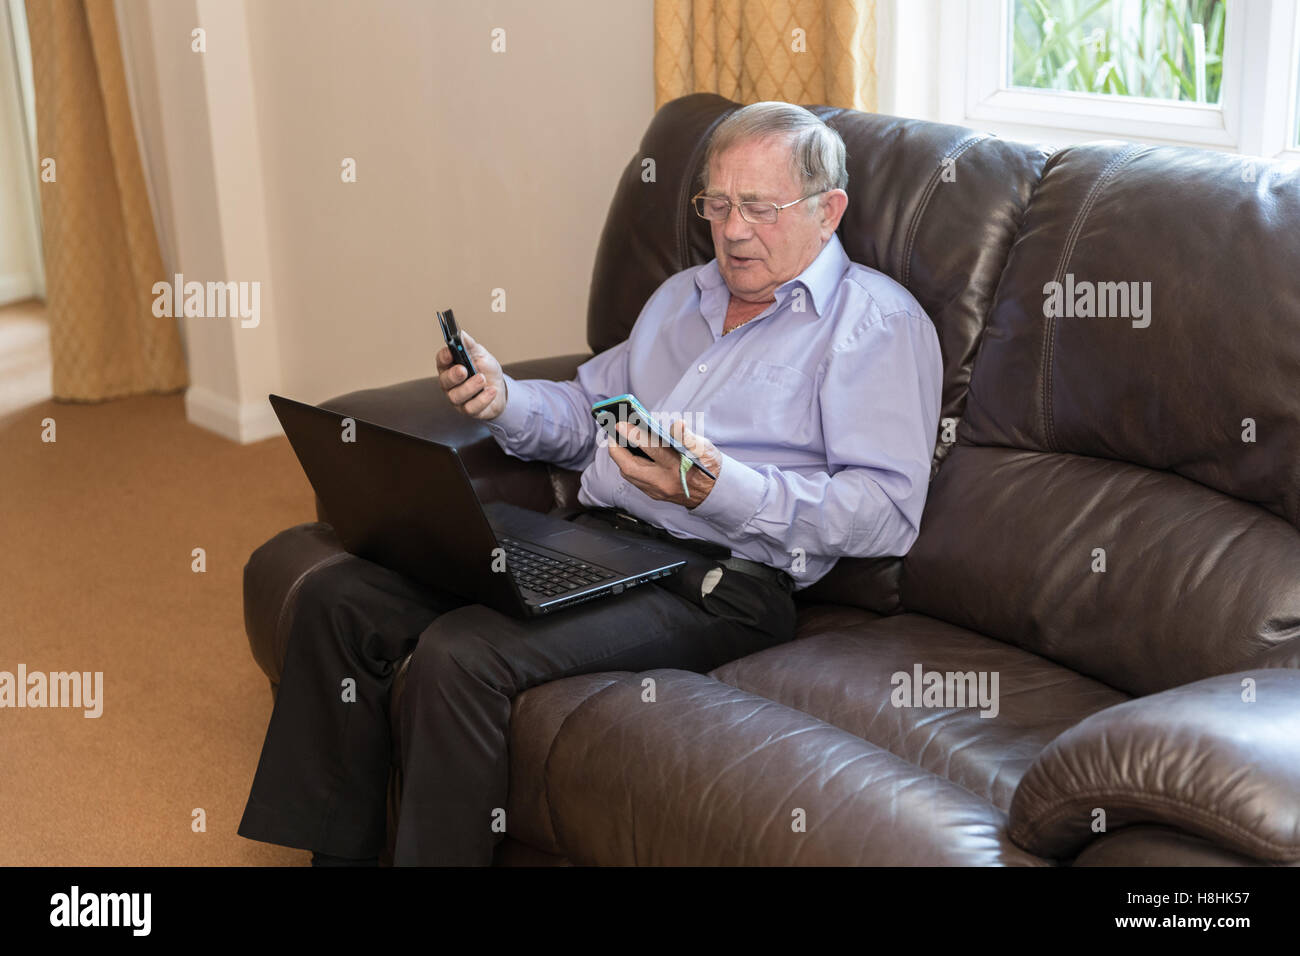 Rentner versucht, moderne elektronische Geräte wie Laptop und Handy zu verwenden. Stockfoto